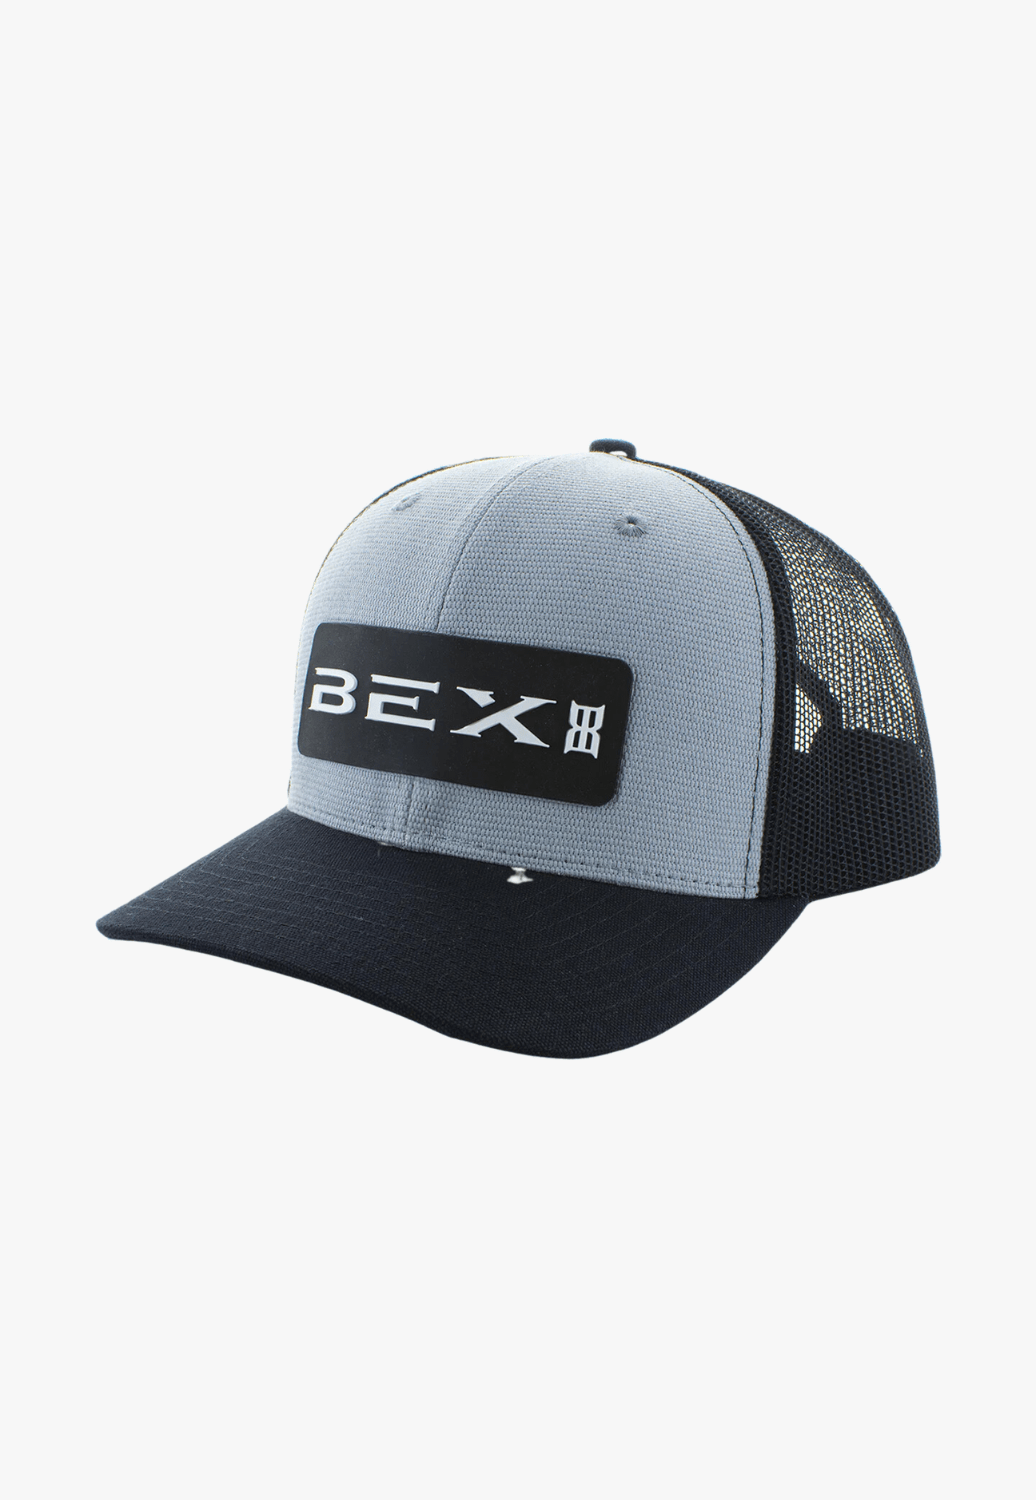 BEX HATS - Caps Heather Grey Bex Marshall Cap